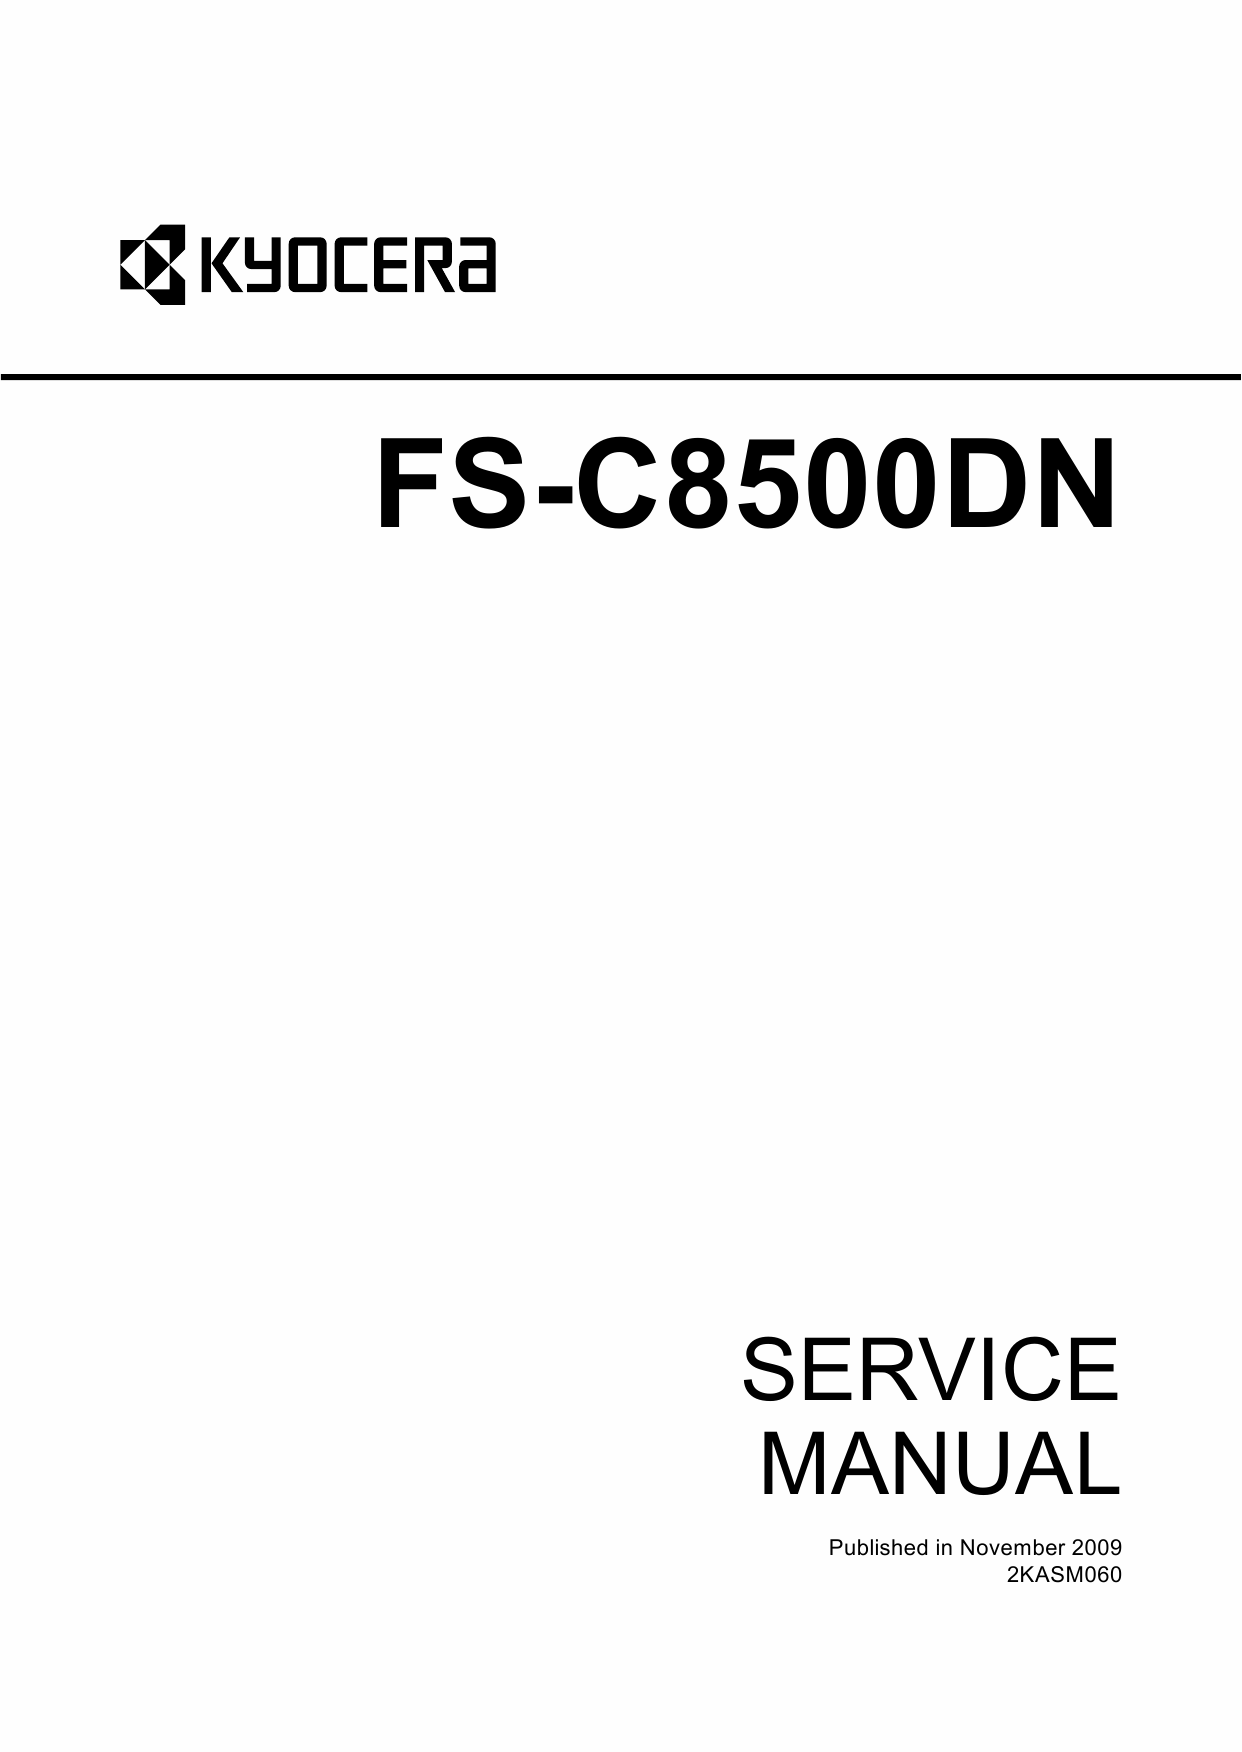 KYOCERA ColorLaserPrinter FS-C8500DN Parts and Service Manual-1